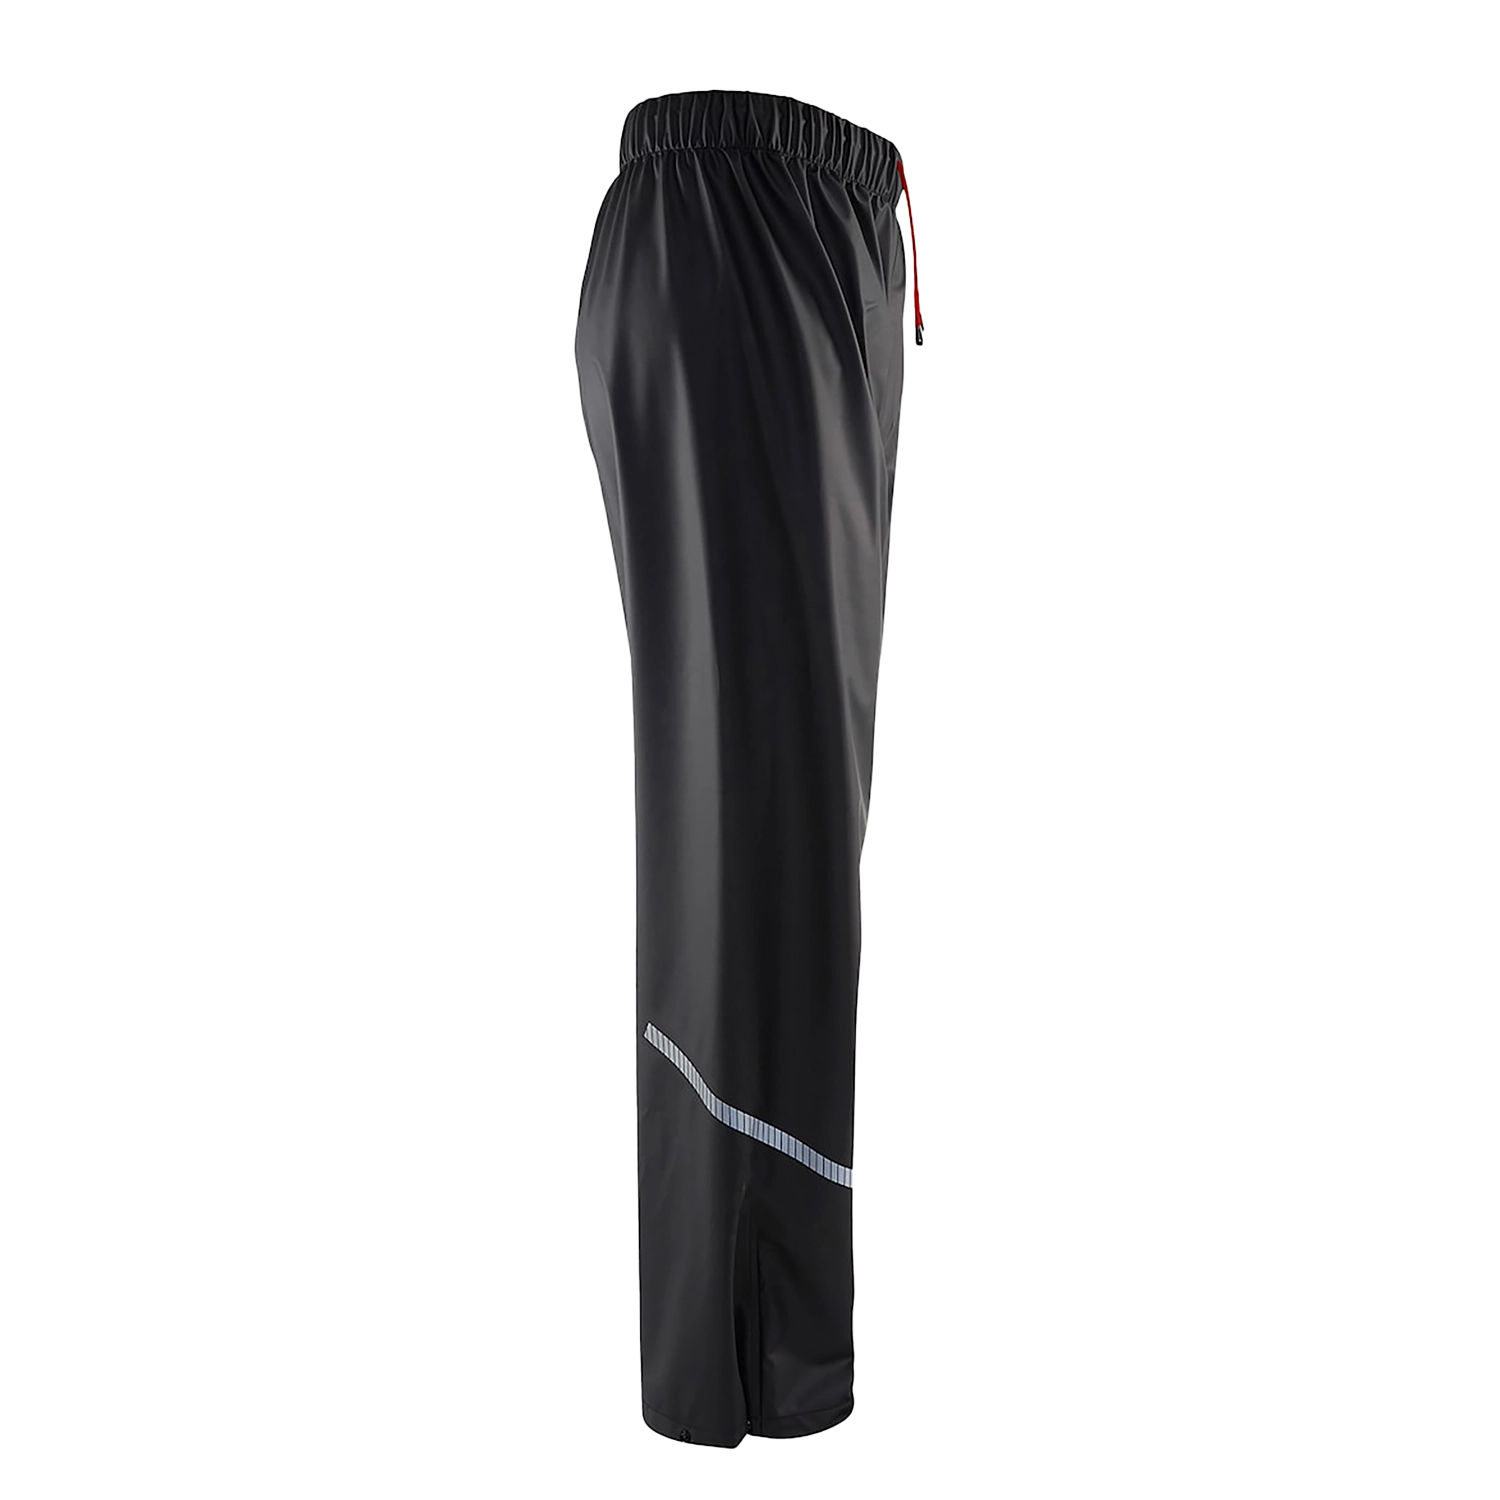 Pantalon de pluie niveau 1 1301/2000/9900 - noir - m